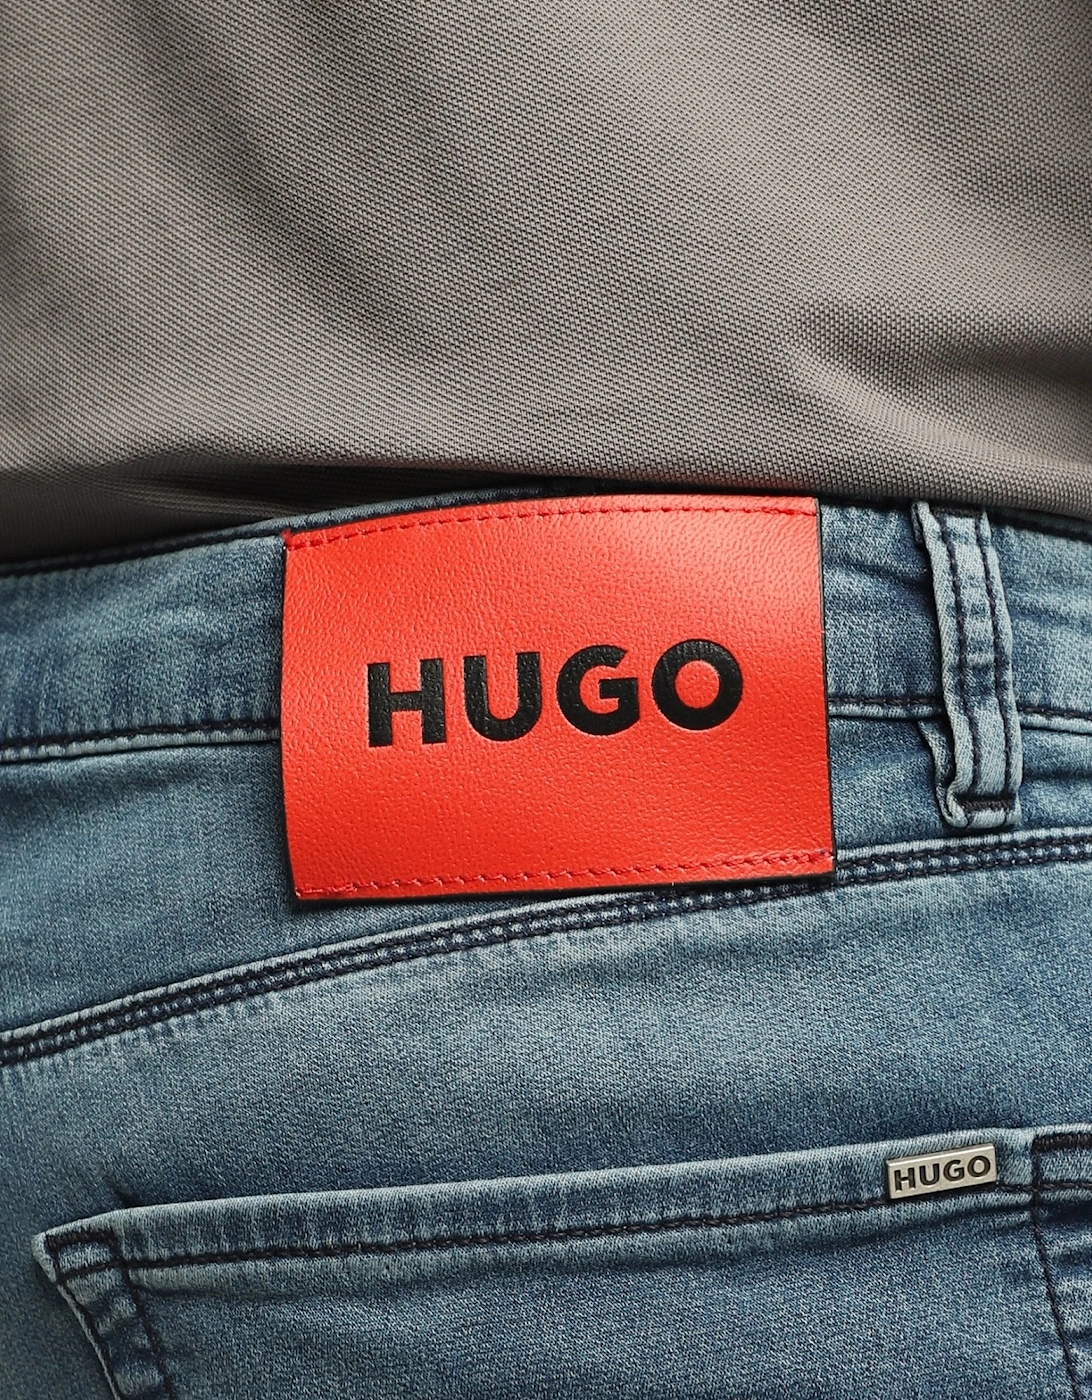 HUGO 734 Extra Slim Fit Blue Jeans